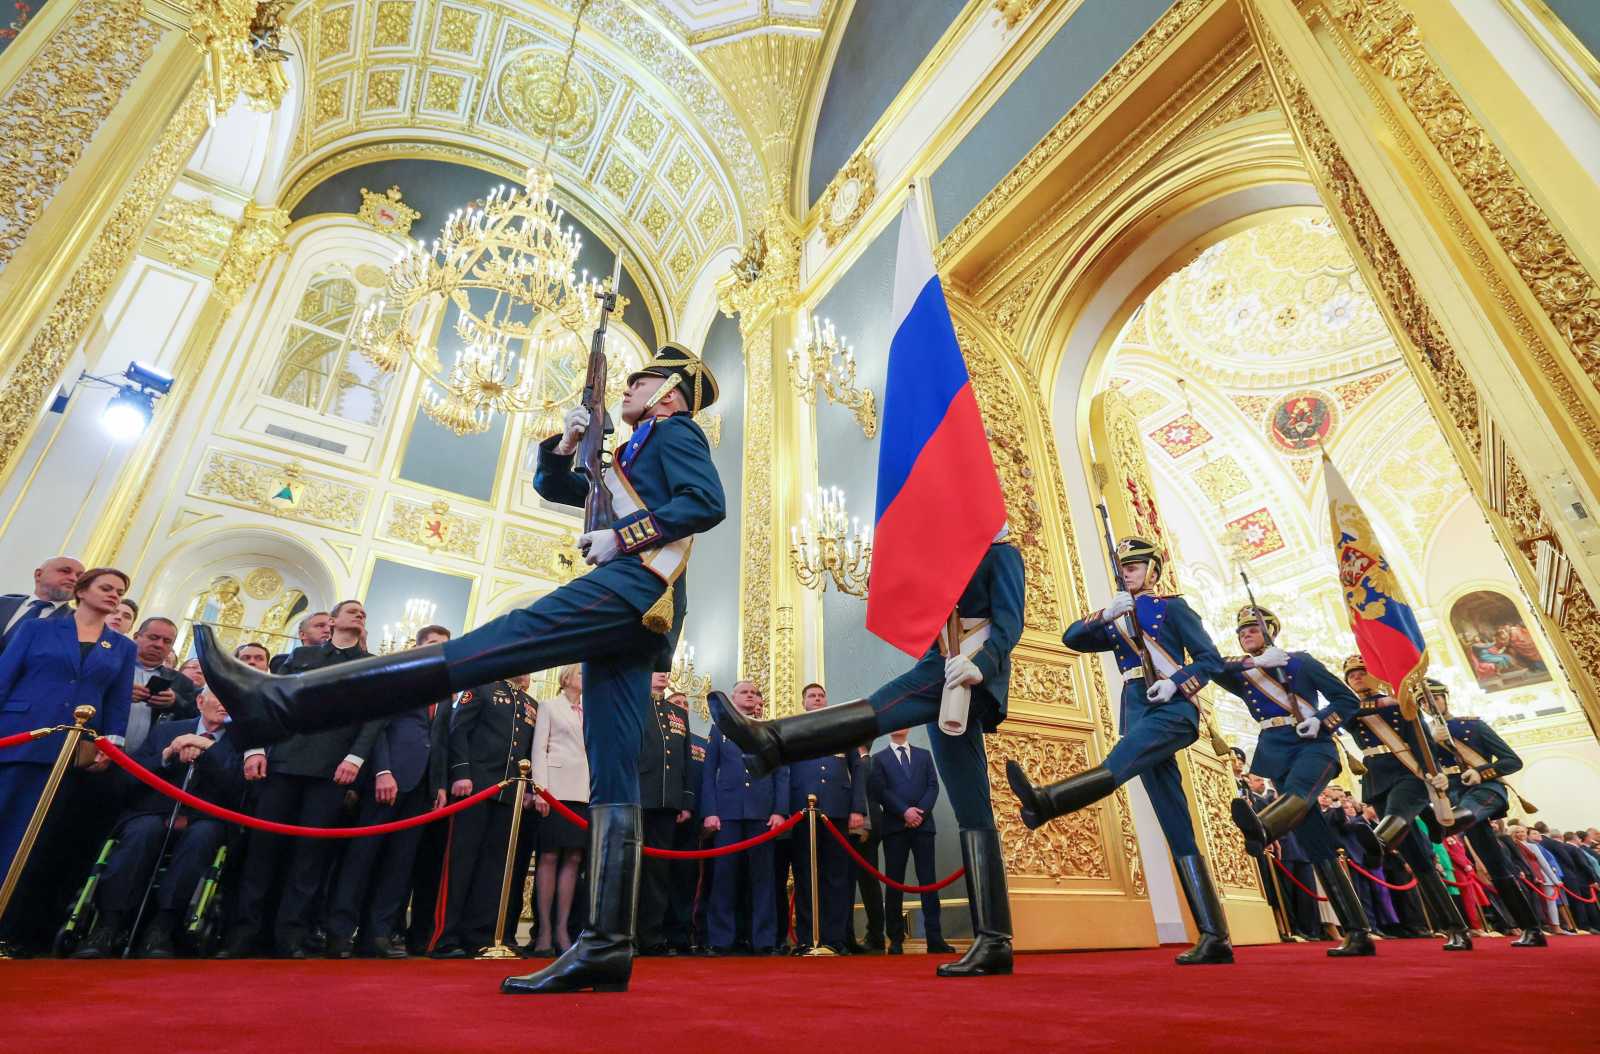 Orosz világnézet. Az elemző szerinte az Európai Unió összeomlása egy „új Jaltához” vezetne, ami újraformálja Európát Fotó: Agerpres